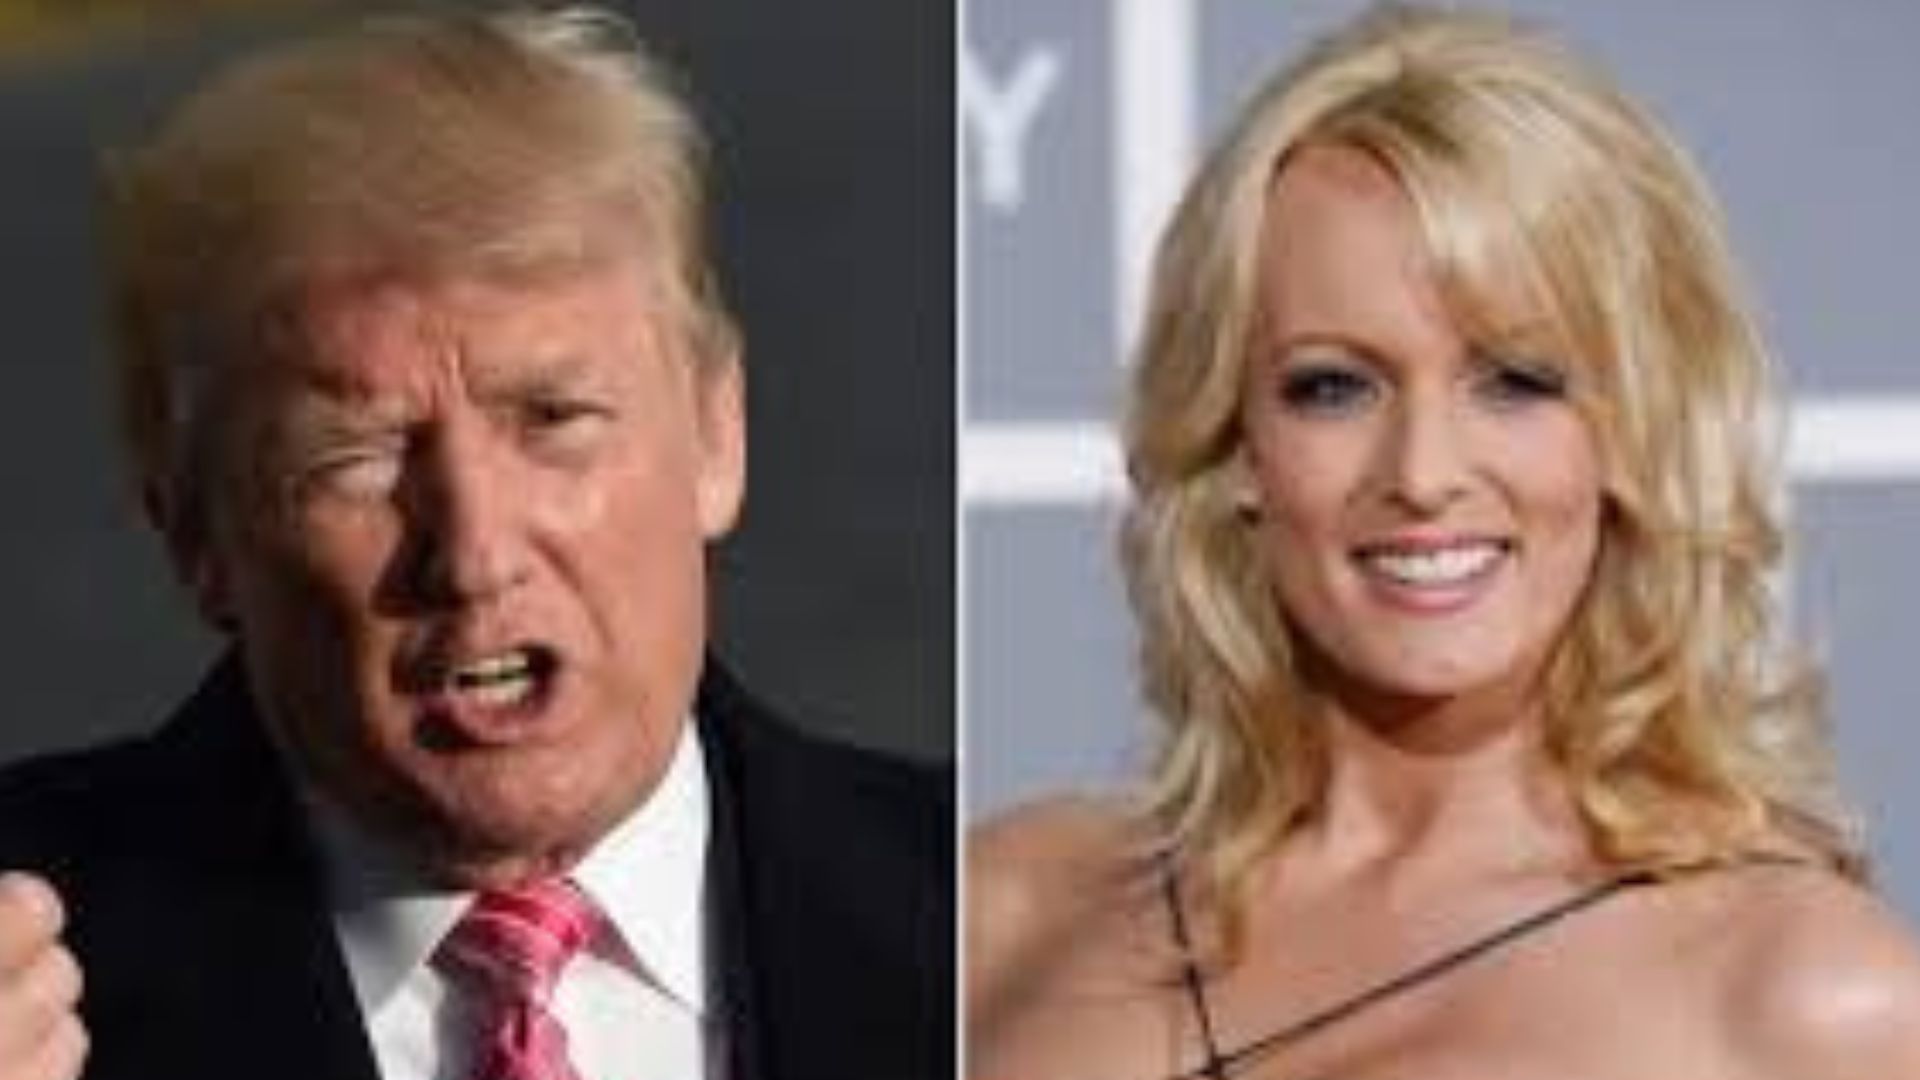 Internacional: Trump é condenado por fraude para comprar silêncio de atriz pornô Candidato novamente à Casa Branca neste ano